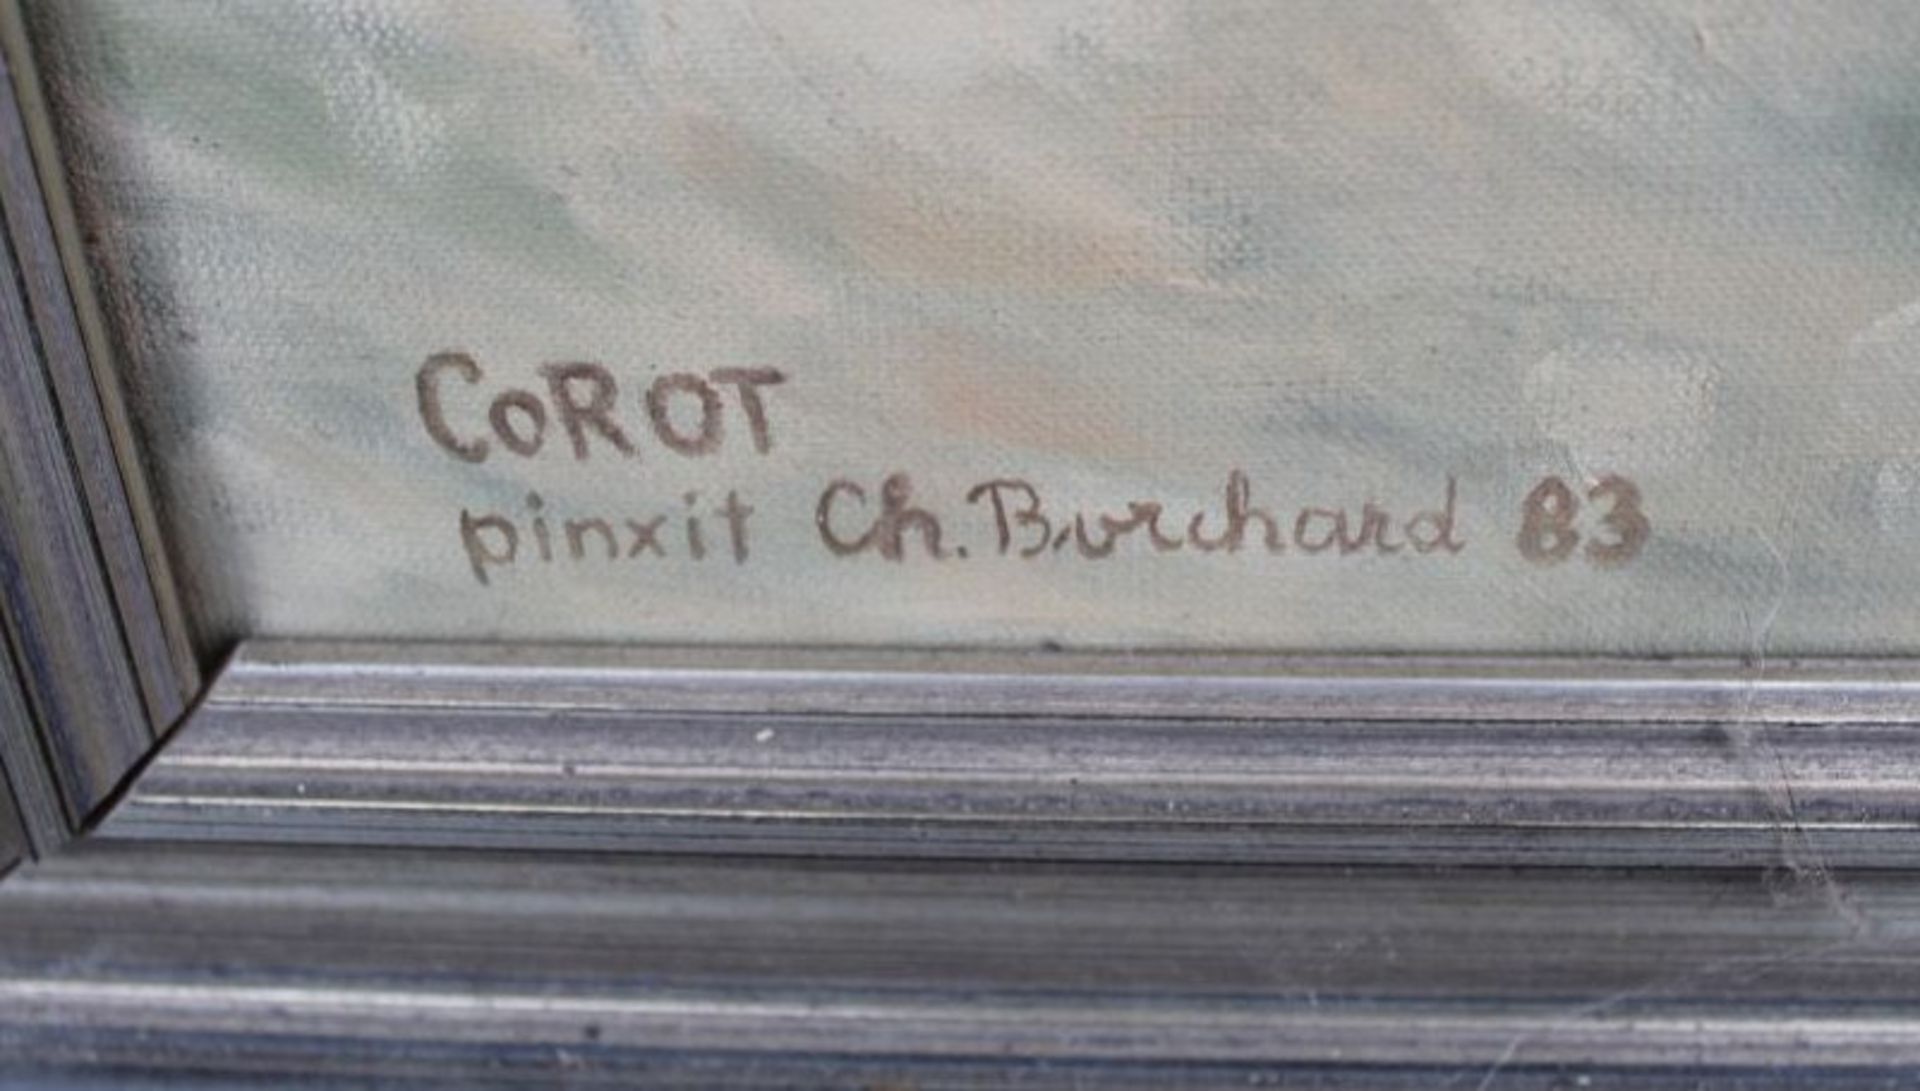 Ch. Borchard (18)83 "Cellospieler" Kopie nach Corot, Öl/Leinen, alt gerahmt, RG 82x63 cm - Bild 3 aus 5